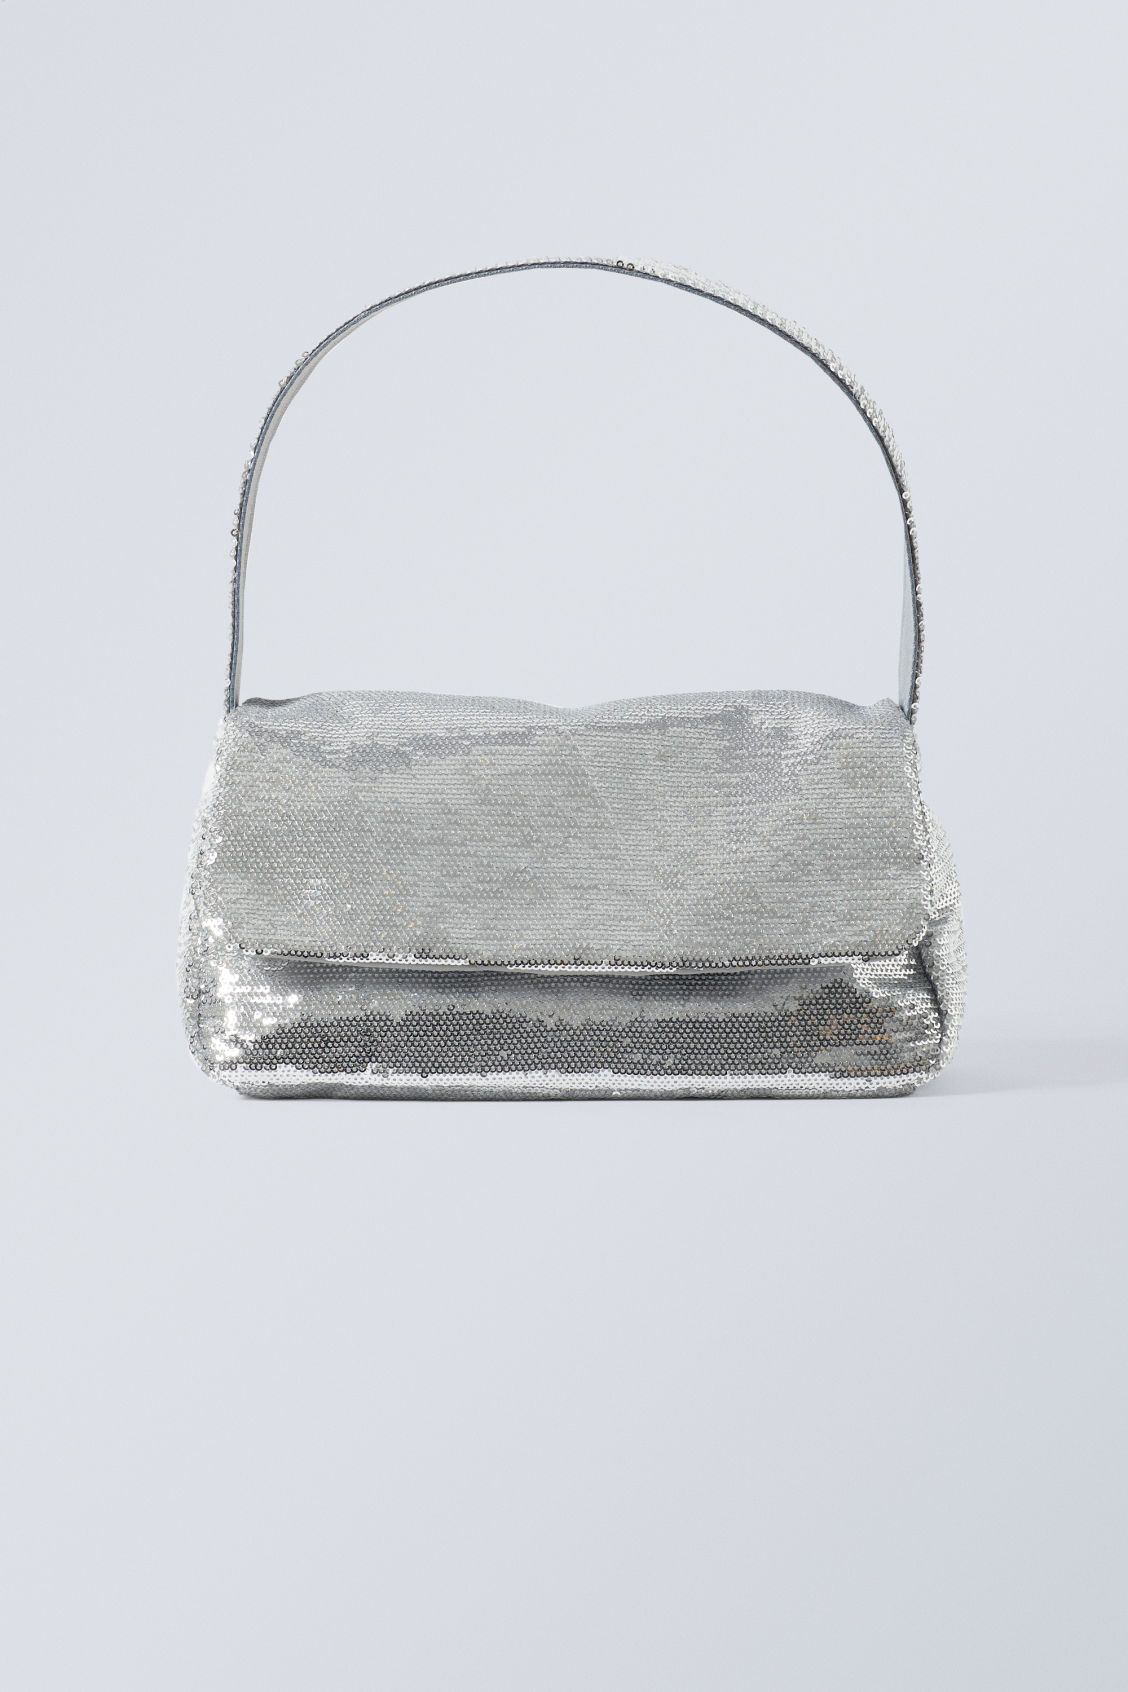 Aisha Sequin Handbag - Silver | Weekday